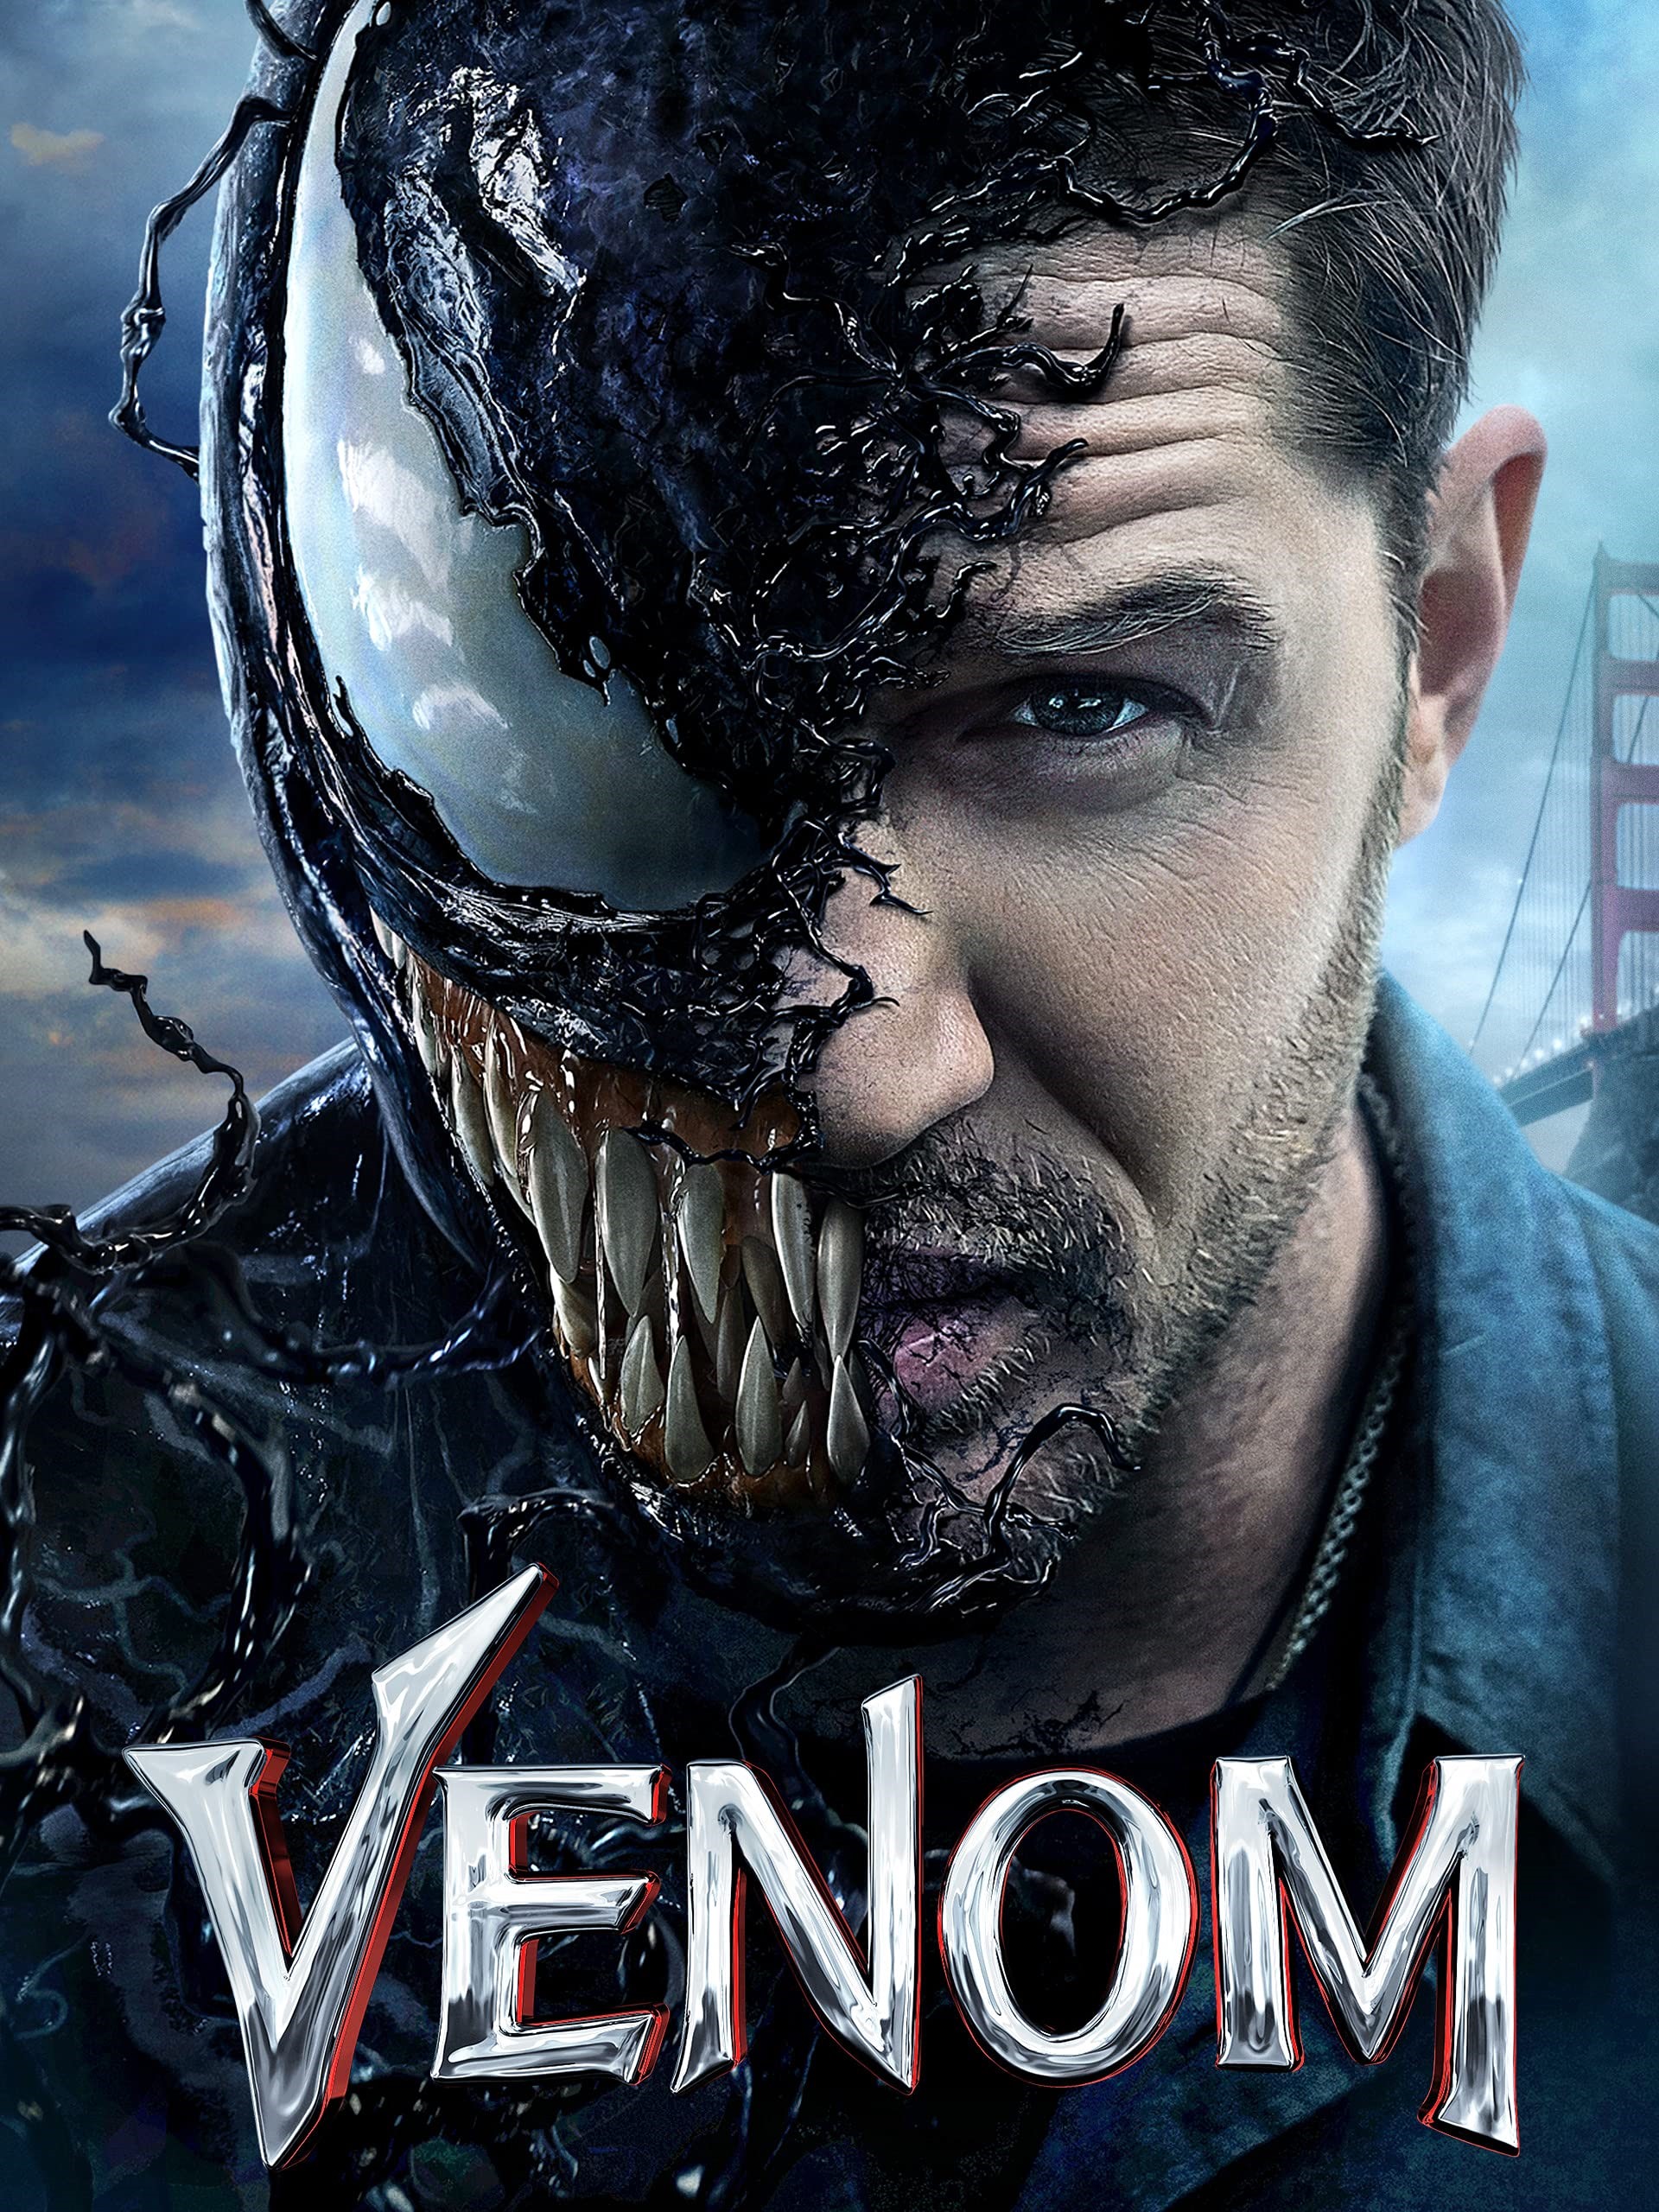 Venom: Từ Nhân Vật Triệu Usd Của Marvel Đến Sự Nguy Hiểm Ở Blackpink